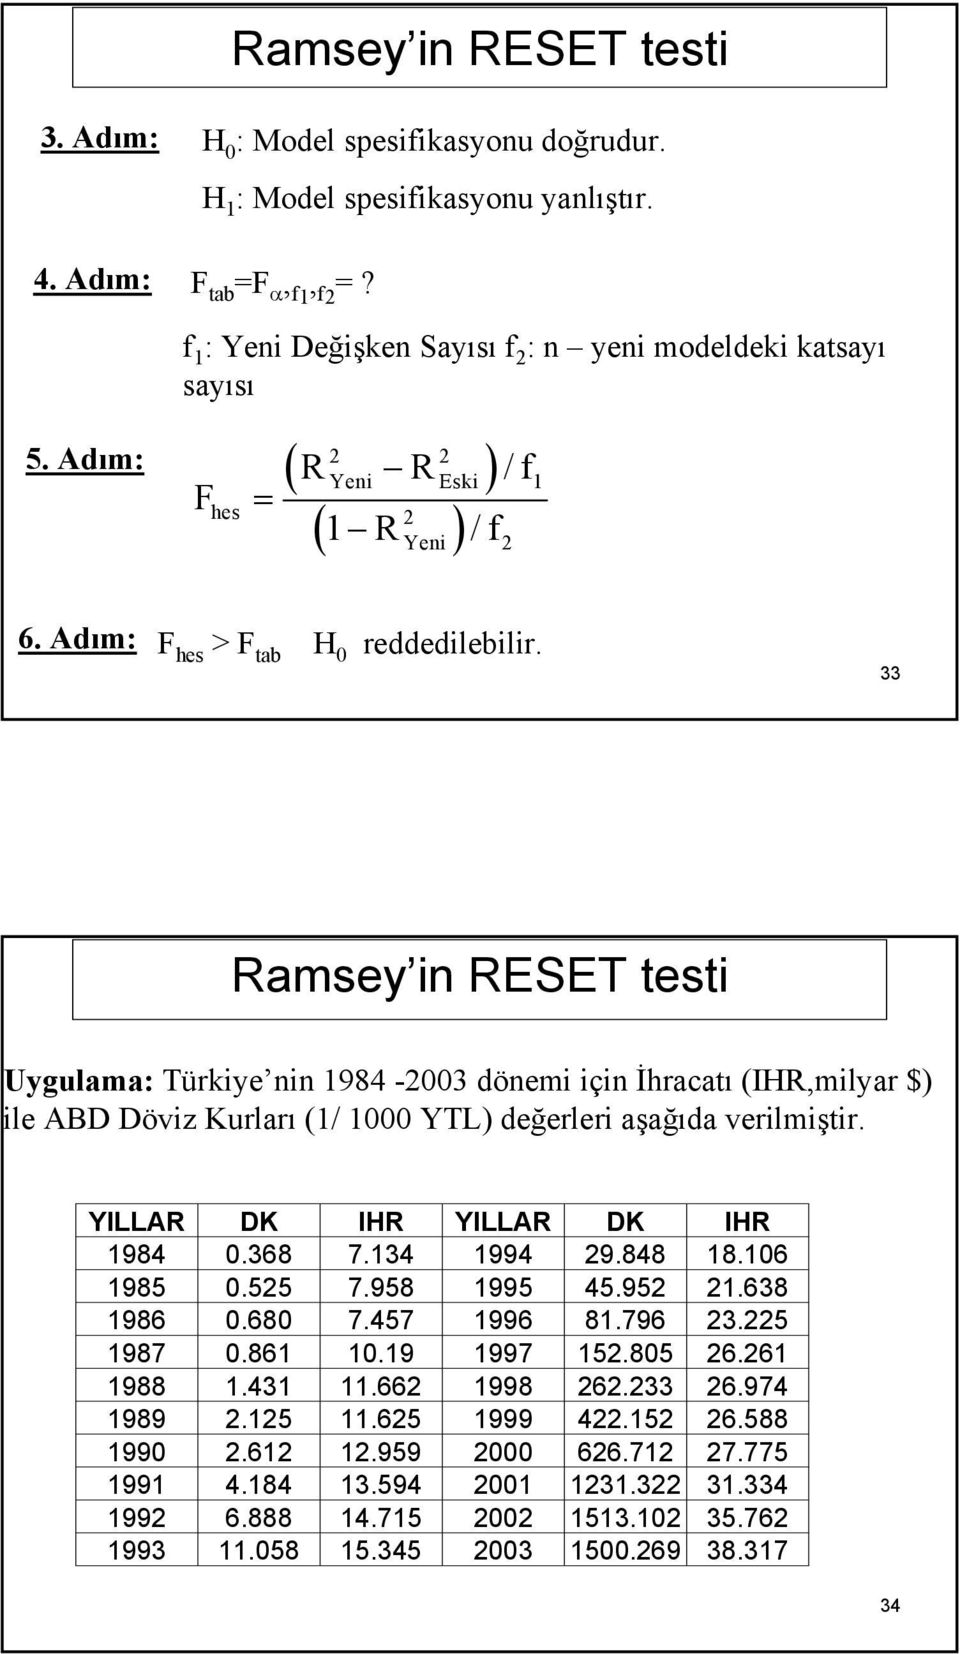 33 Ramsey in RESET testi Uygulama: Türkiye nin 1984-003 dönemi için İhracatı (IHR,milyar $) ile ABD Döviz Kurları (1/ 1000 YTL) değerleri aşağıda verilmiştir. YILLAR DK IHR YILLAR DK IHR 1984 0.368 7.